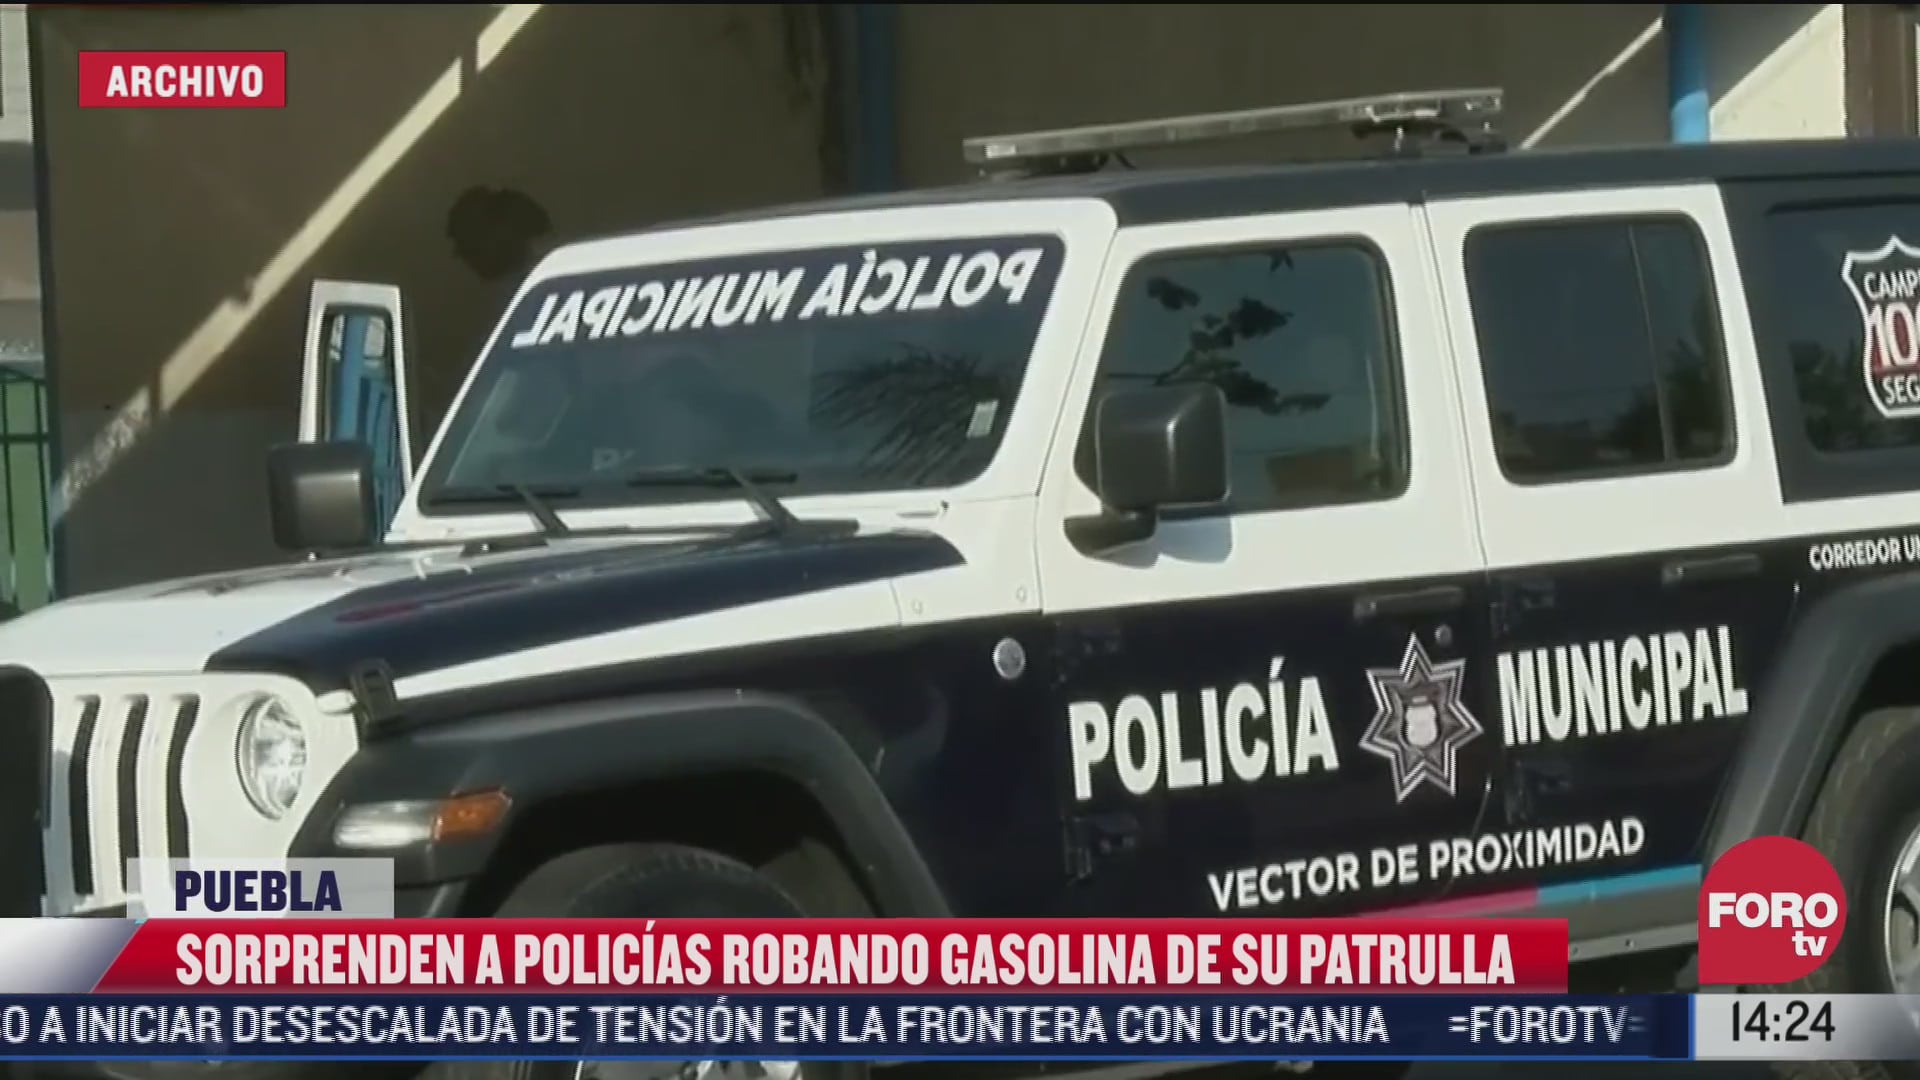 policias sorprenden a companeros robando gasolina de patrulla